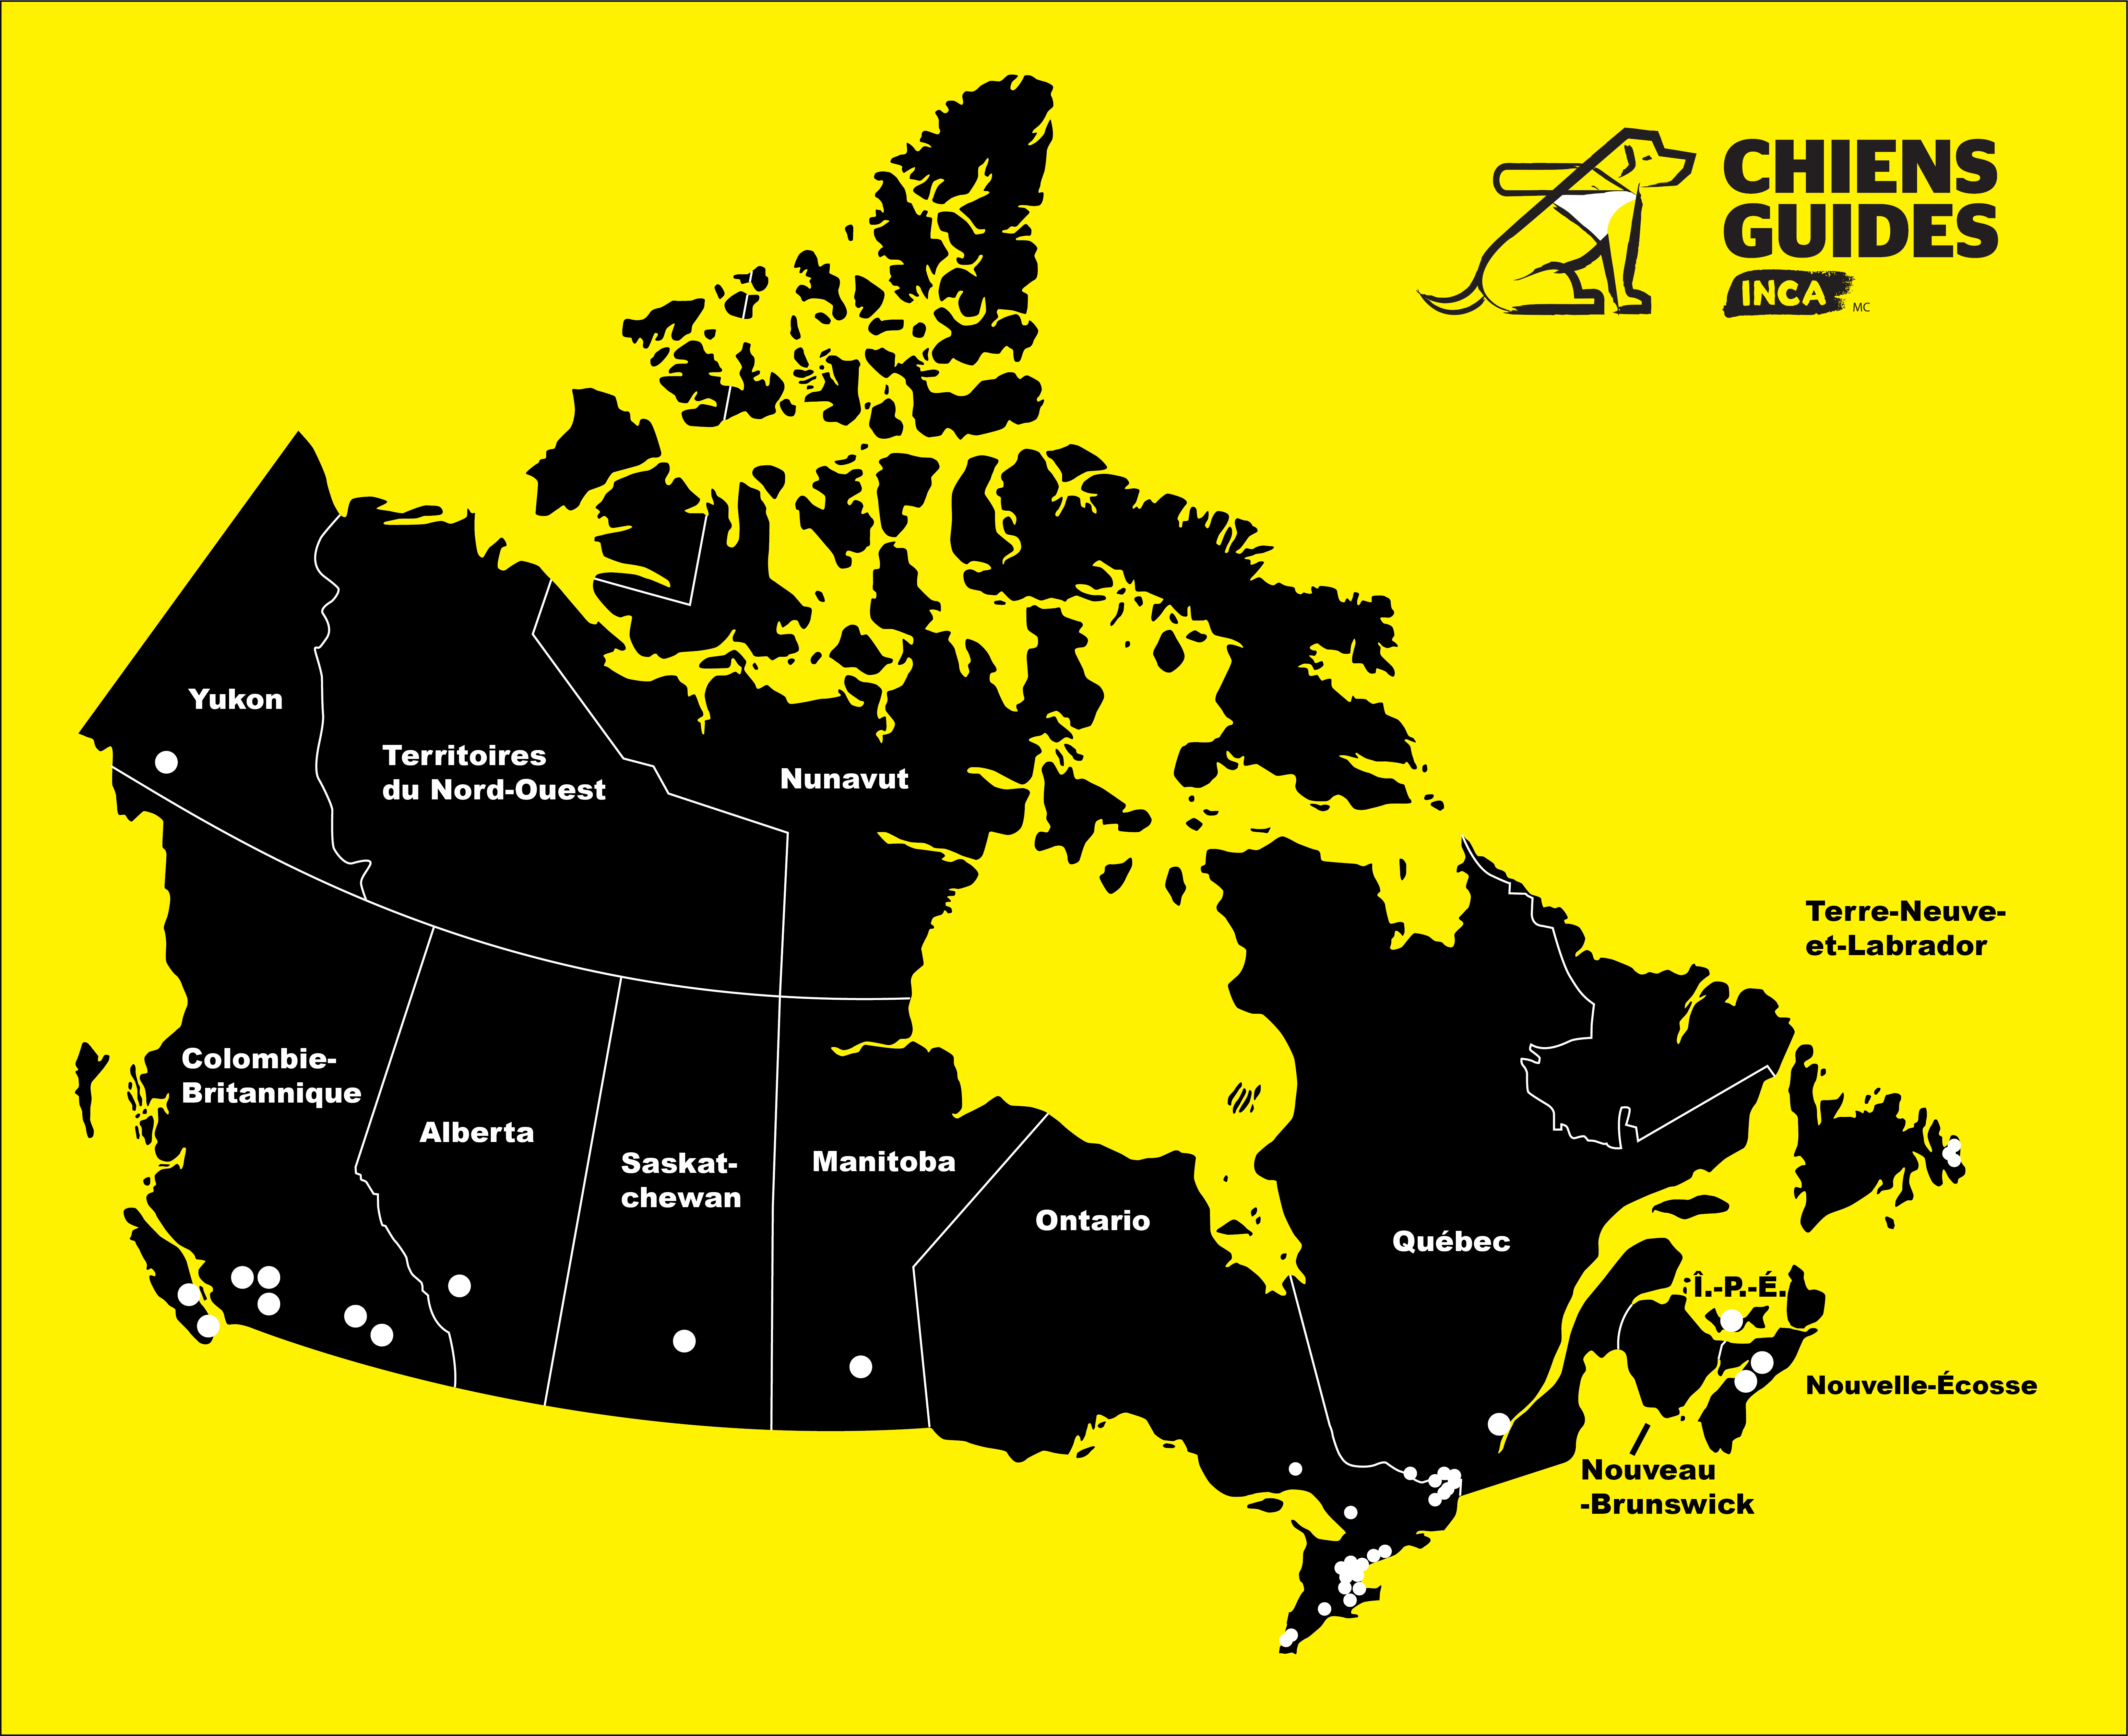 Carte du Canada jaune et noir avec des points où ont été placés des chiens-guides